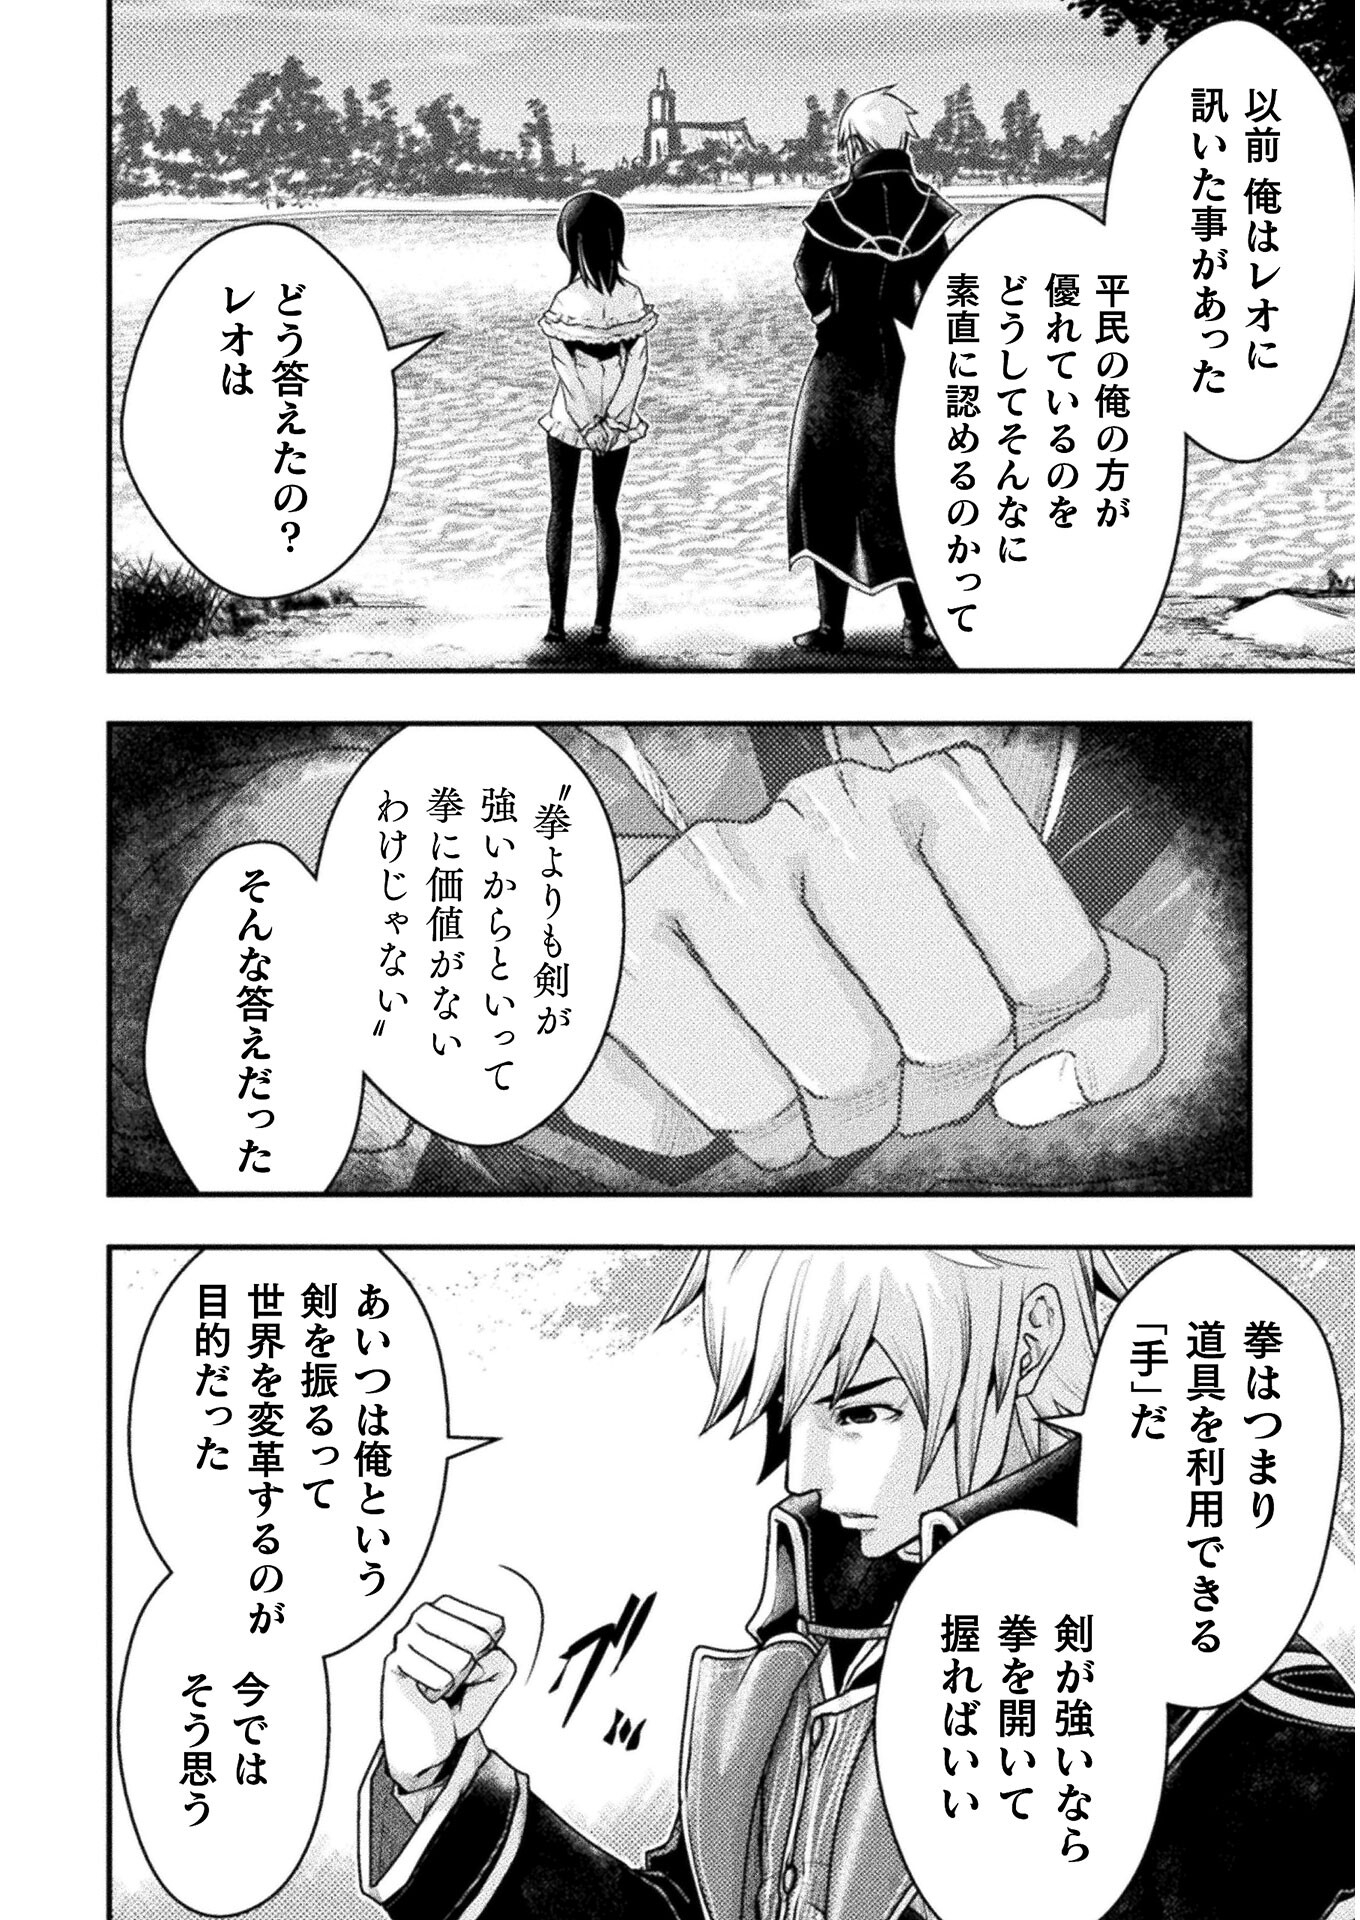 異世界の名探偵; Detectives from another world 第15話 - Page 14